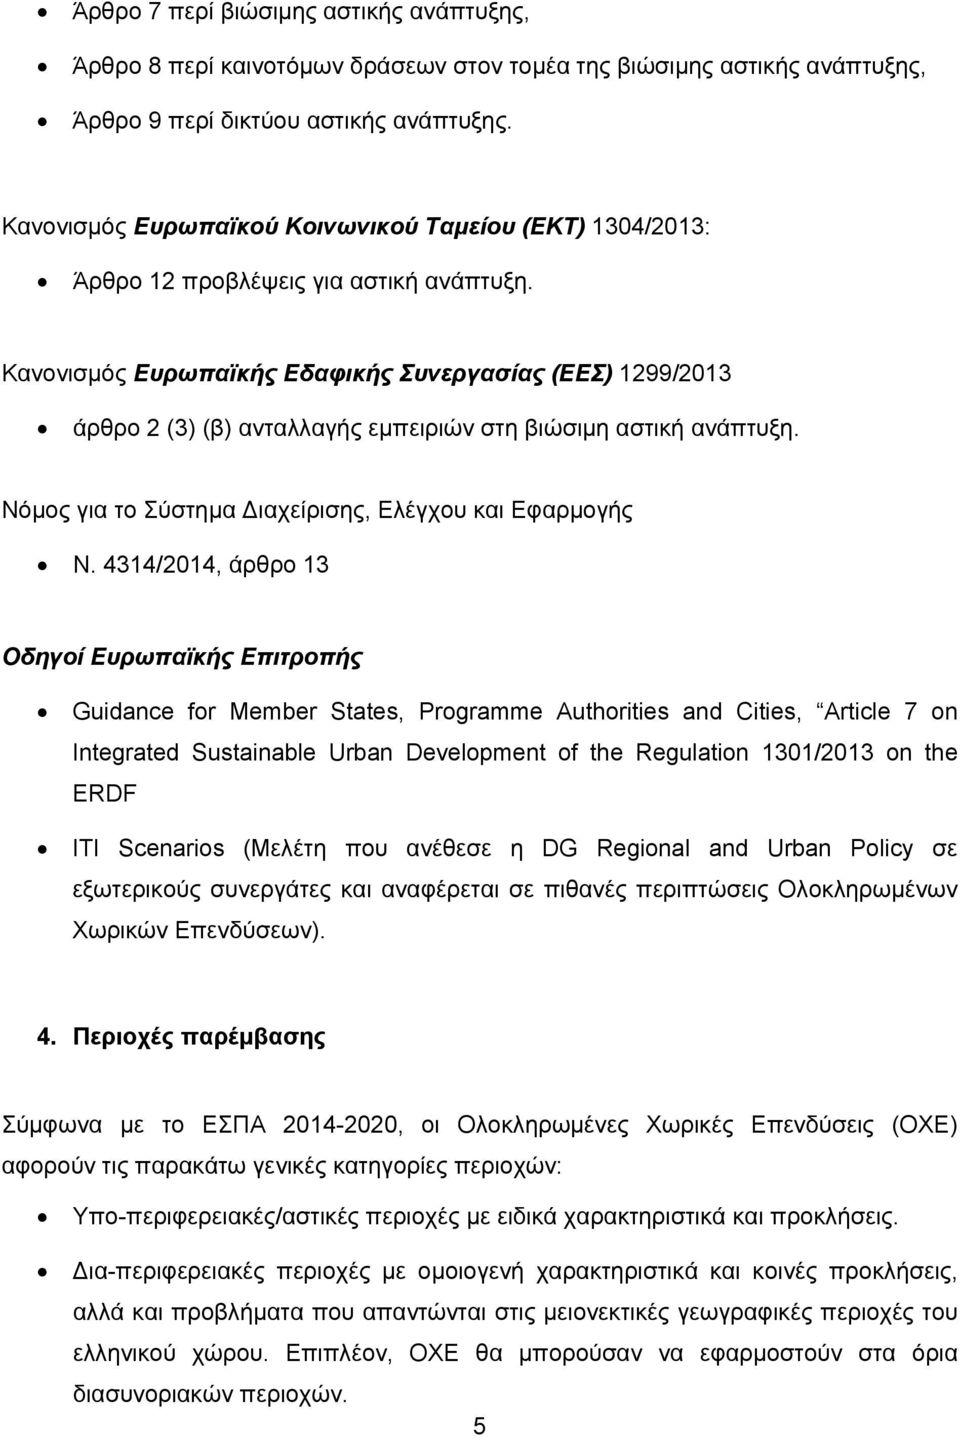 Κανονισμός Ευρωπαϊκής Εδαφικής Συνεργασίας (ΕΕΣ) 1299/2013 άρθρο 2 (3) (β) ανταλλαγής εμπειριών στη βιώσιμη αστική ανάπτυξη. Νόμος για το Σύστημα Διαχείρισης, Ελέγχου και Εφαρμογής Ν.